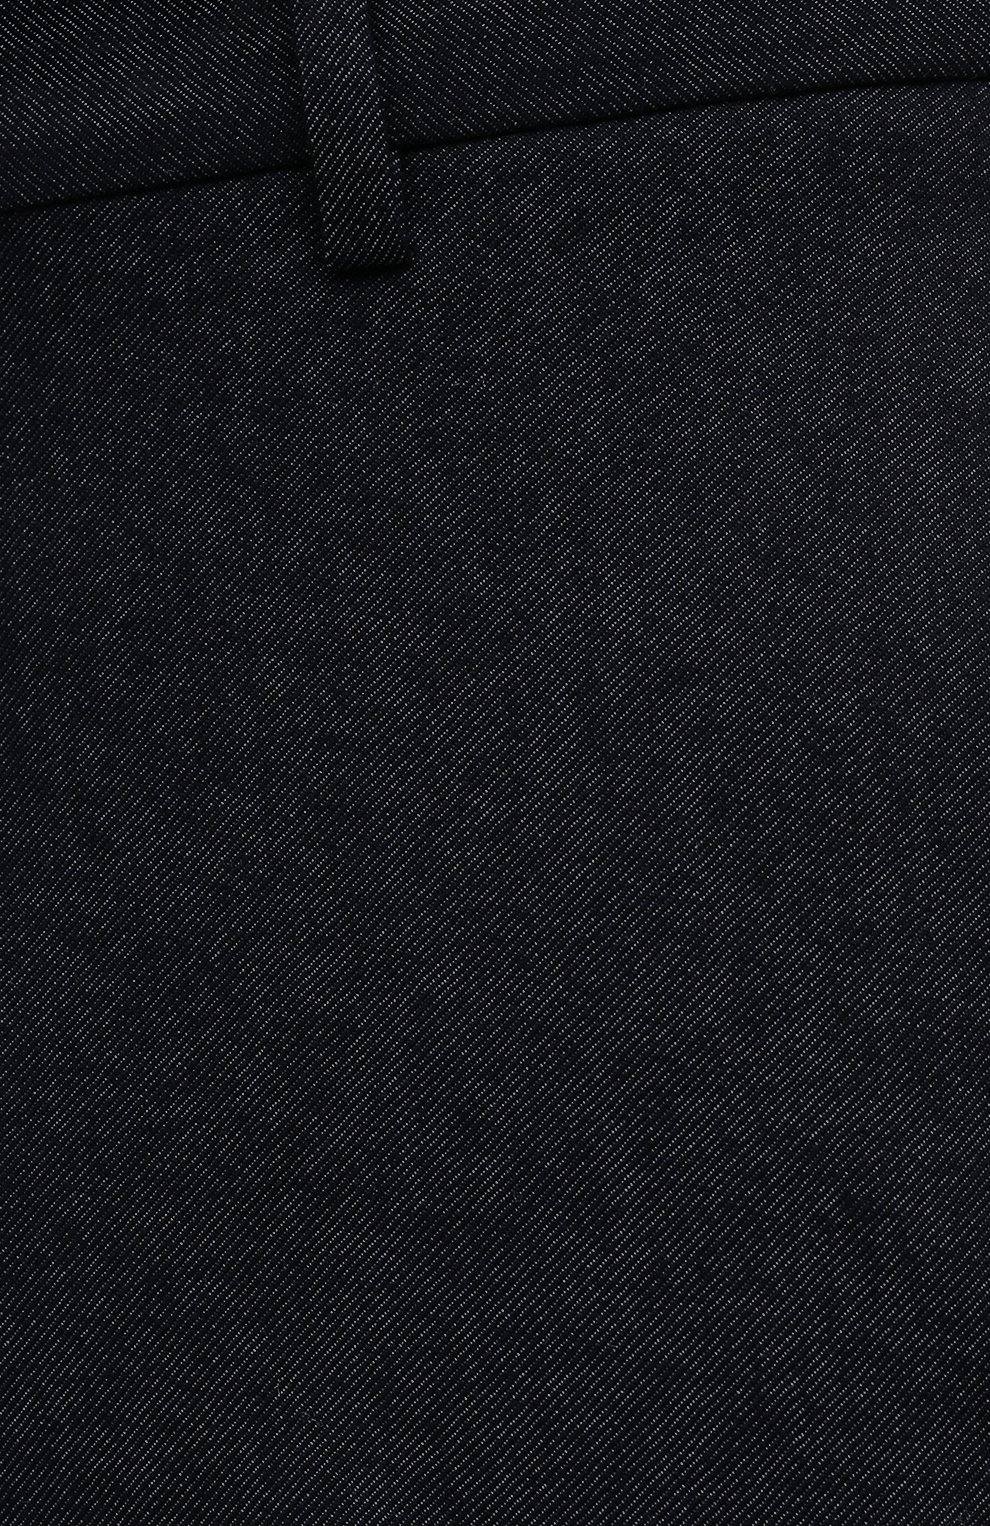 Мужские брюки LORO PIANA темно-синего цвета, арт. FAL4070 | Фото 5 (Материал внешний: Шерсть, Синтетический материал; Длина (брюки, джинсы): Стандартные; Случай: Повседневный; Региональные ограничения белый список (Axapta Mercury): RU; Материал подклада: Синтетический материал; Стили: Кэжуэл)